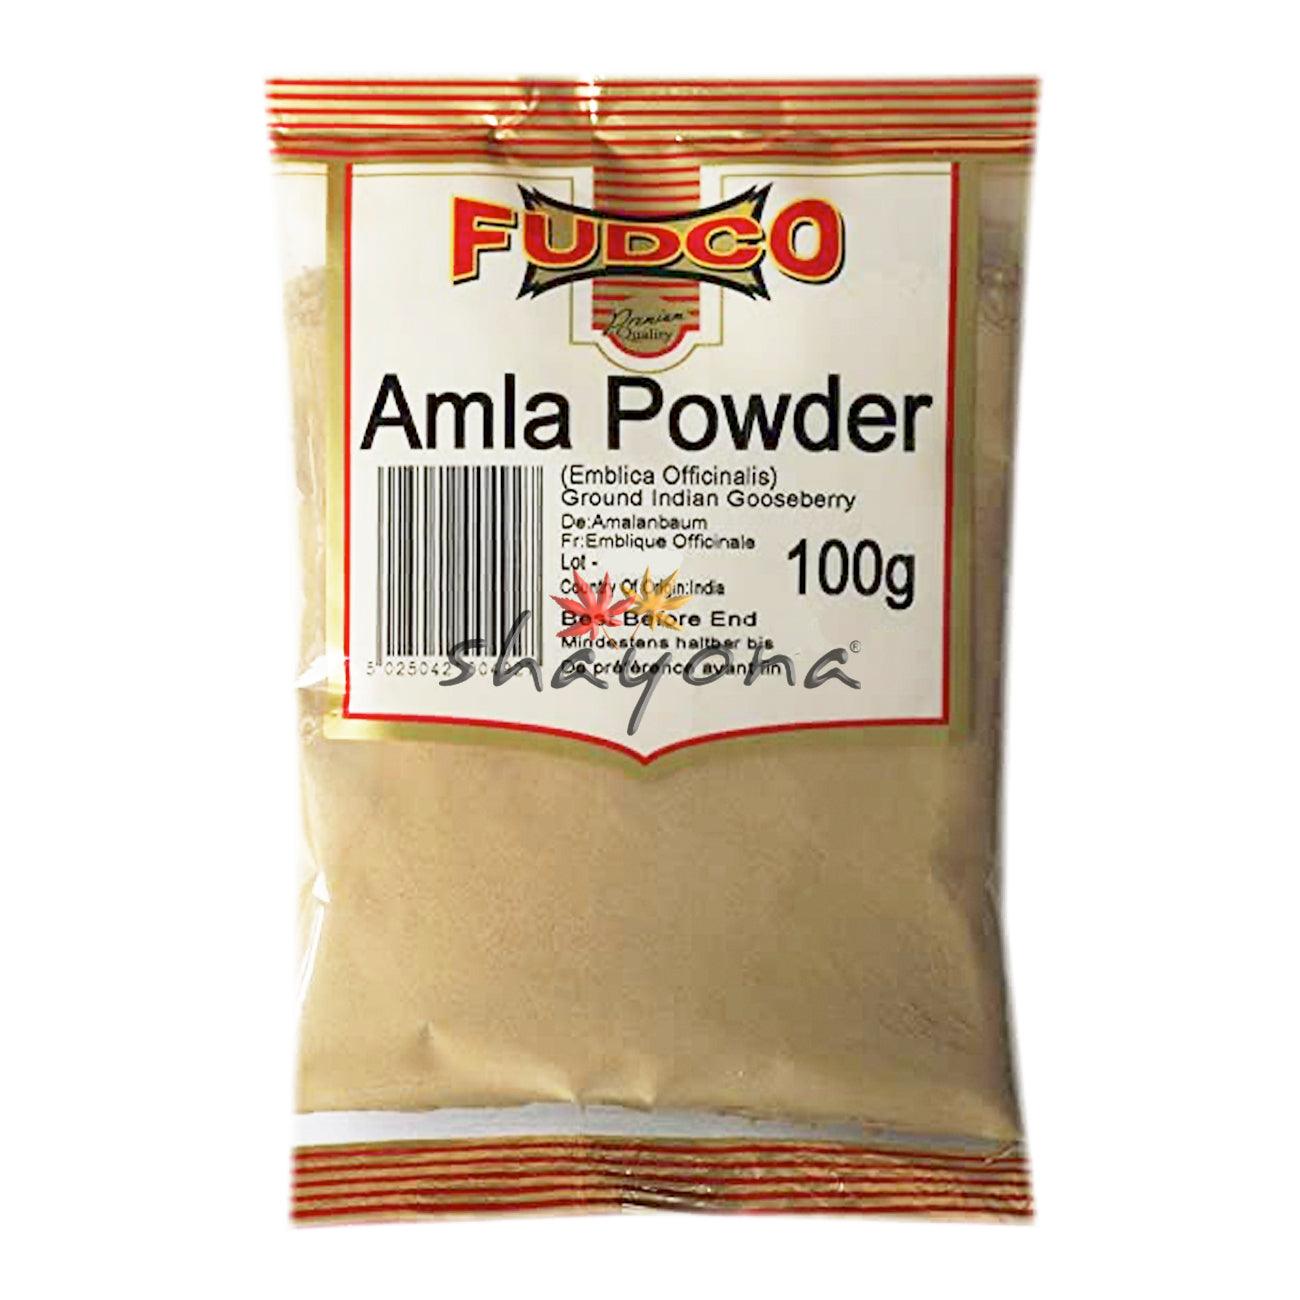 Fudco Amla Powder - Shayona UK